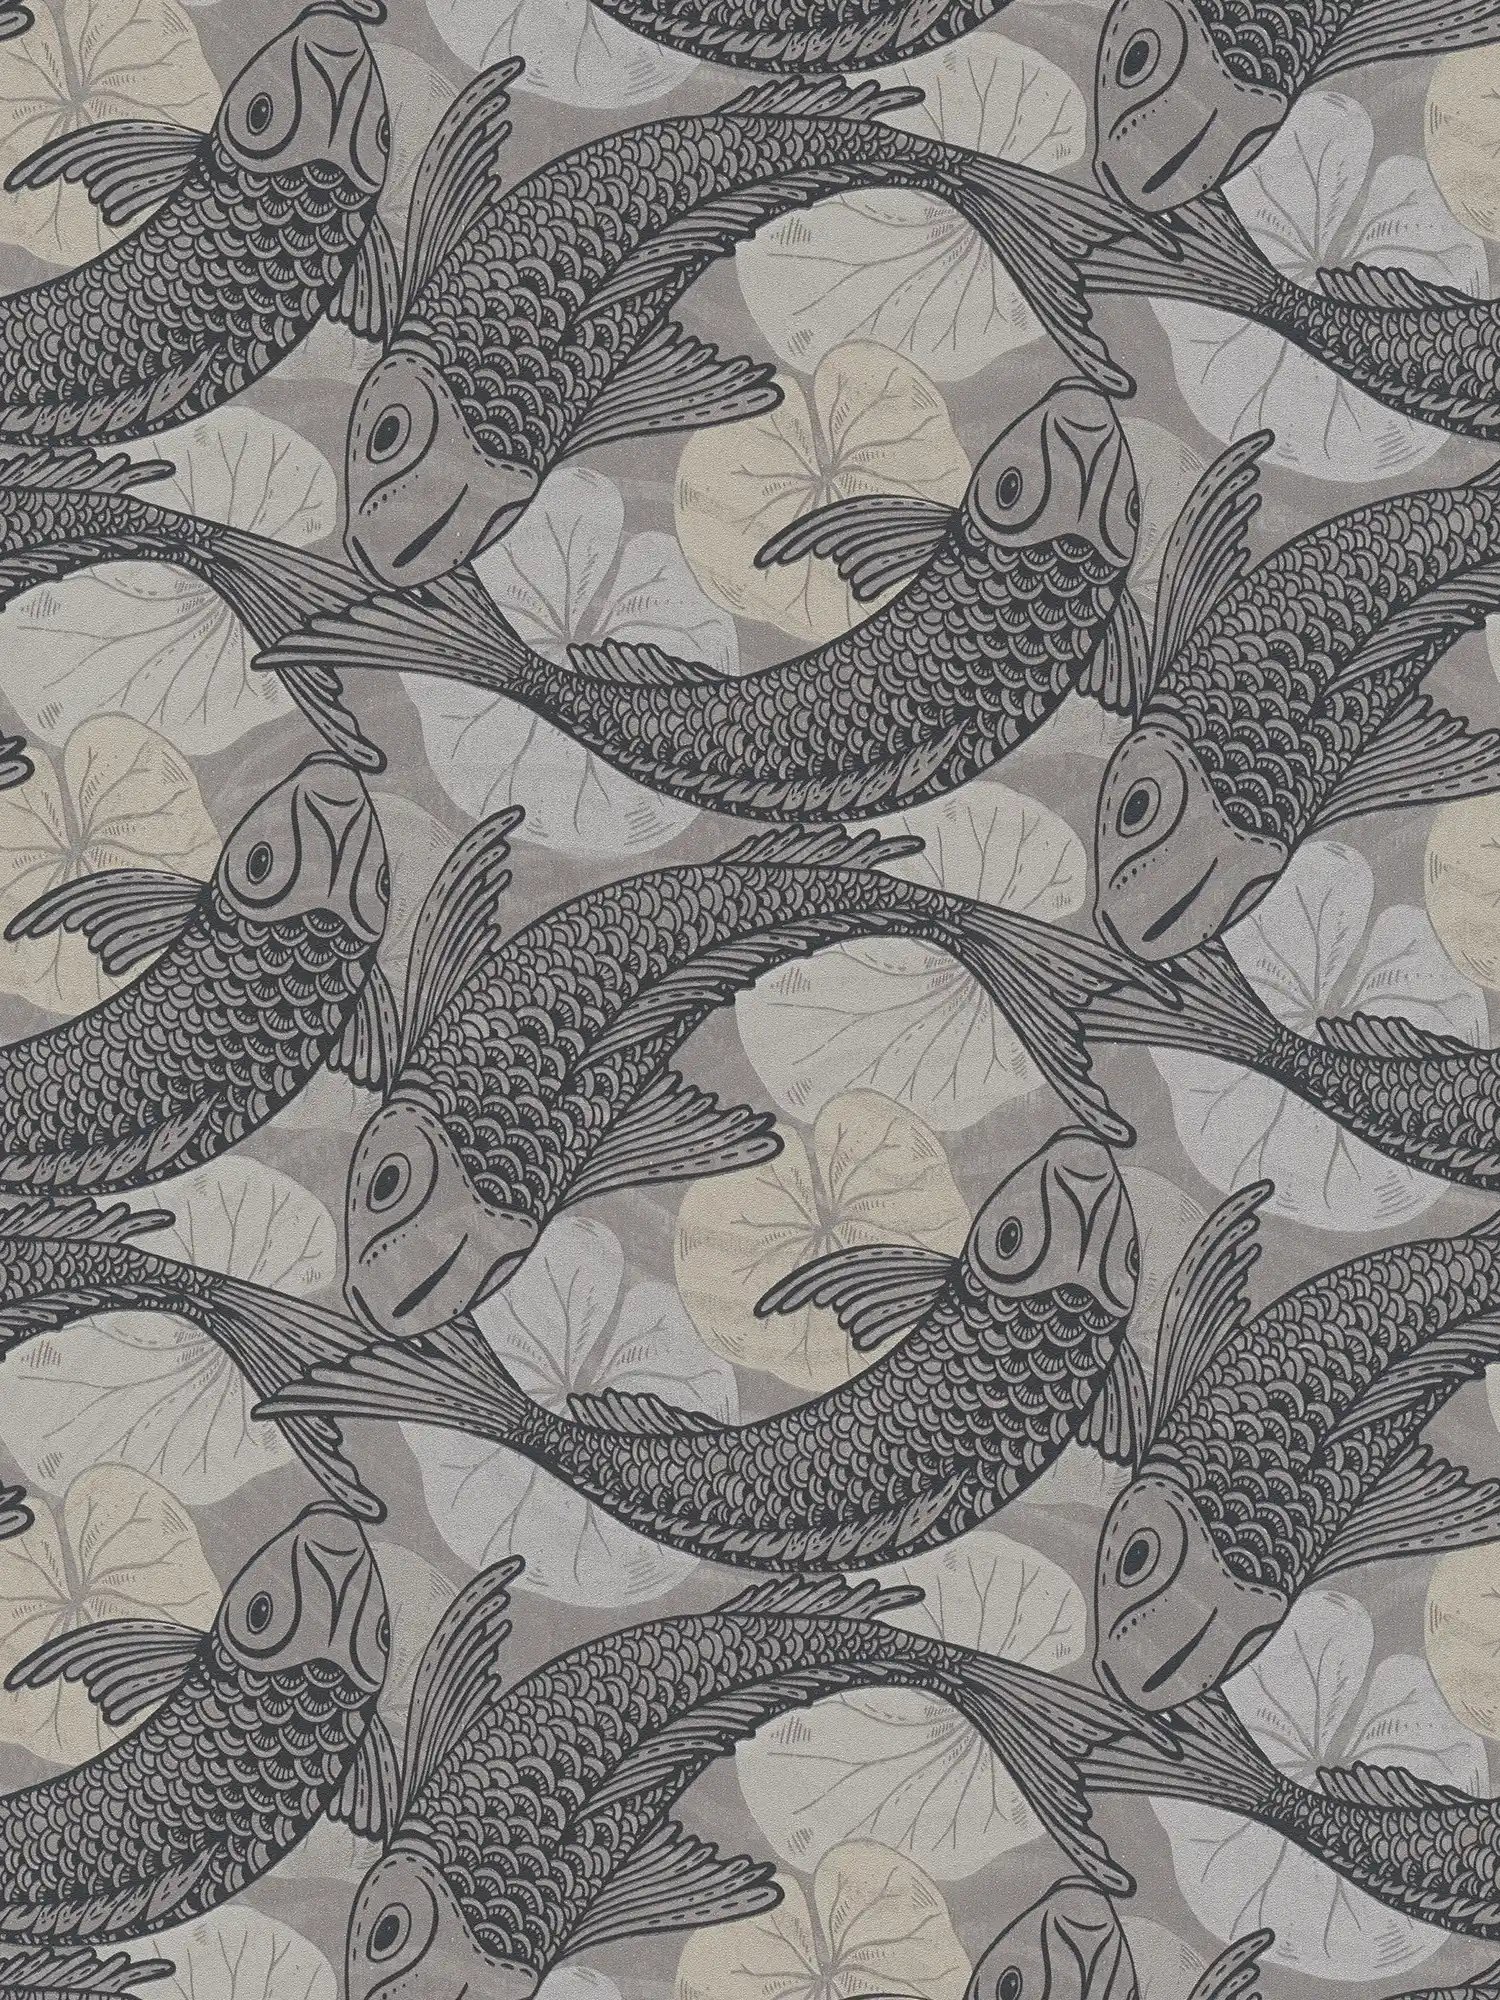 behang Aziatisch design met Koi motief & metallic effect - beige, grijs, zwart
